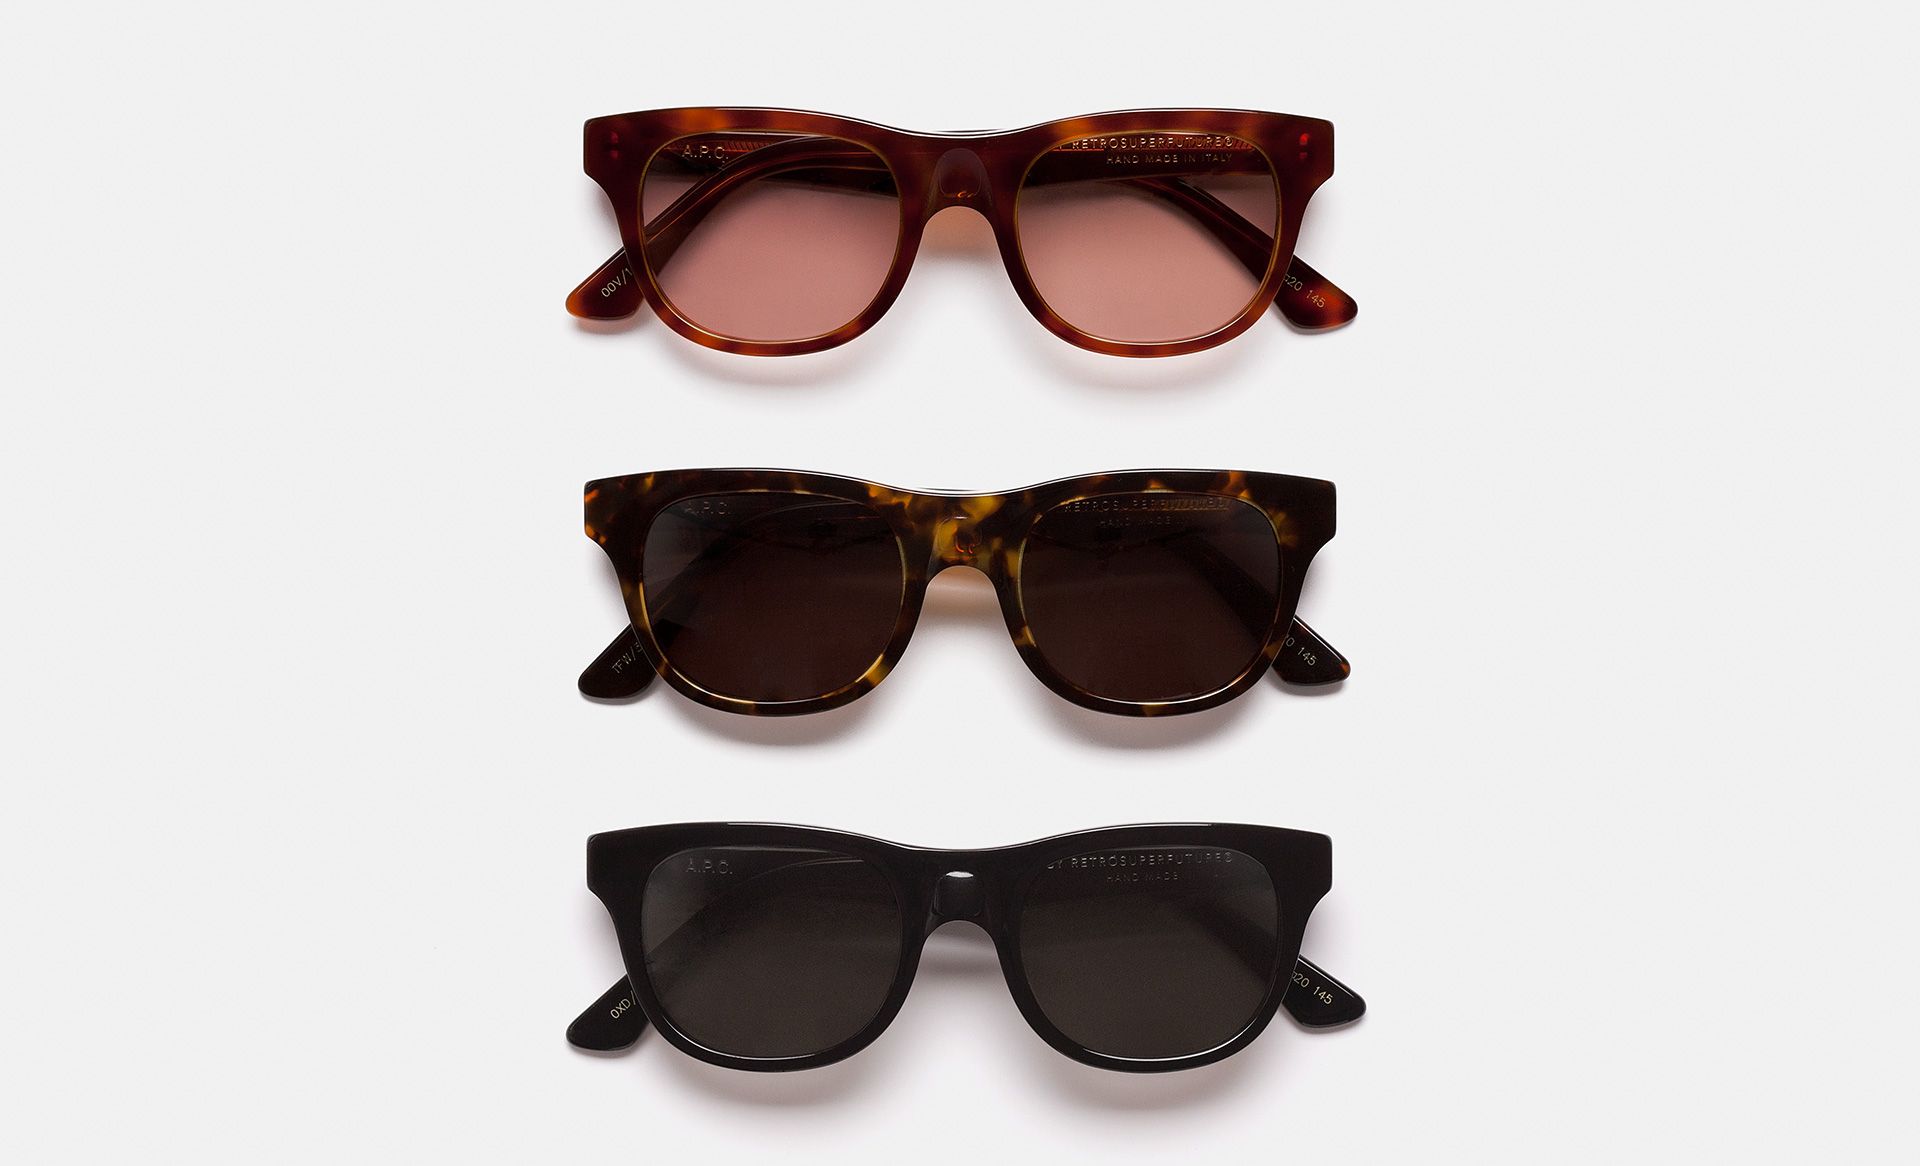 A.P.C. x RETROSUPERFUTURE Sunglasses Collection